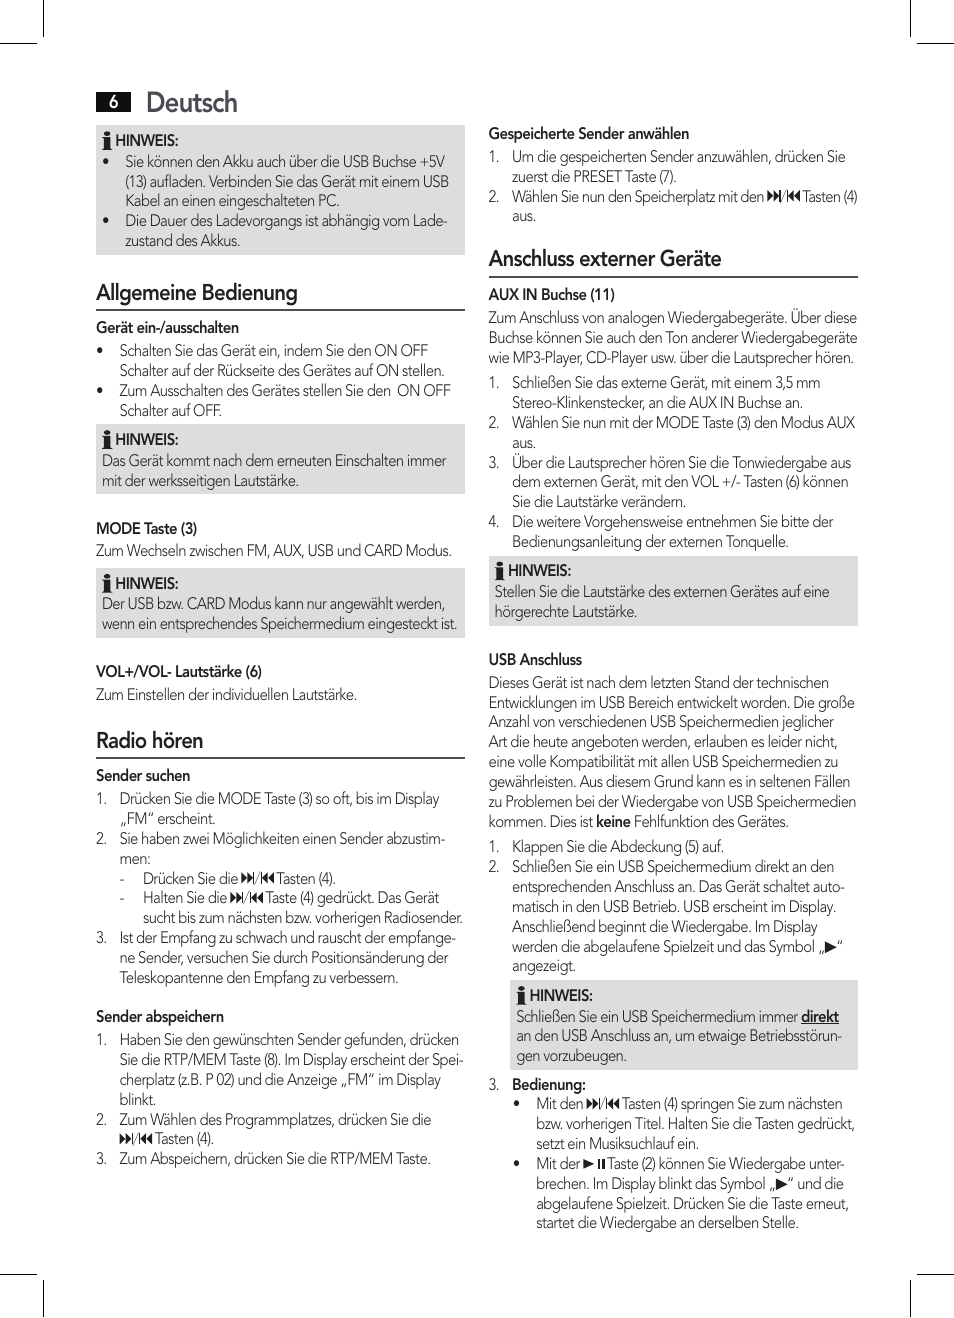 Deutsch, Allgemeine bedienung, Radio hören | AEG MMR 4128 User Manual |  Page 6 / 34